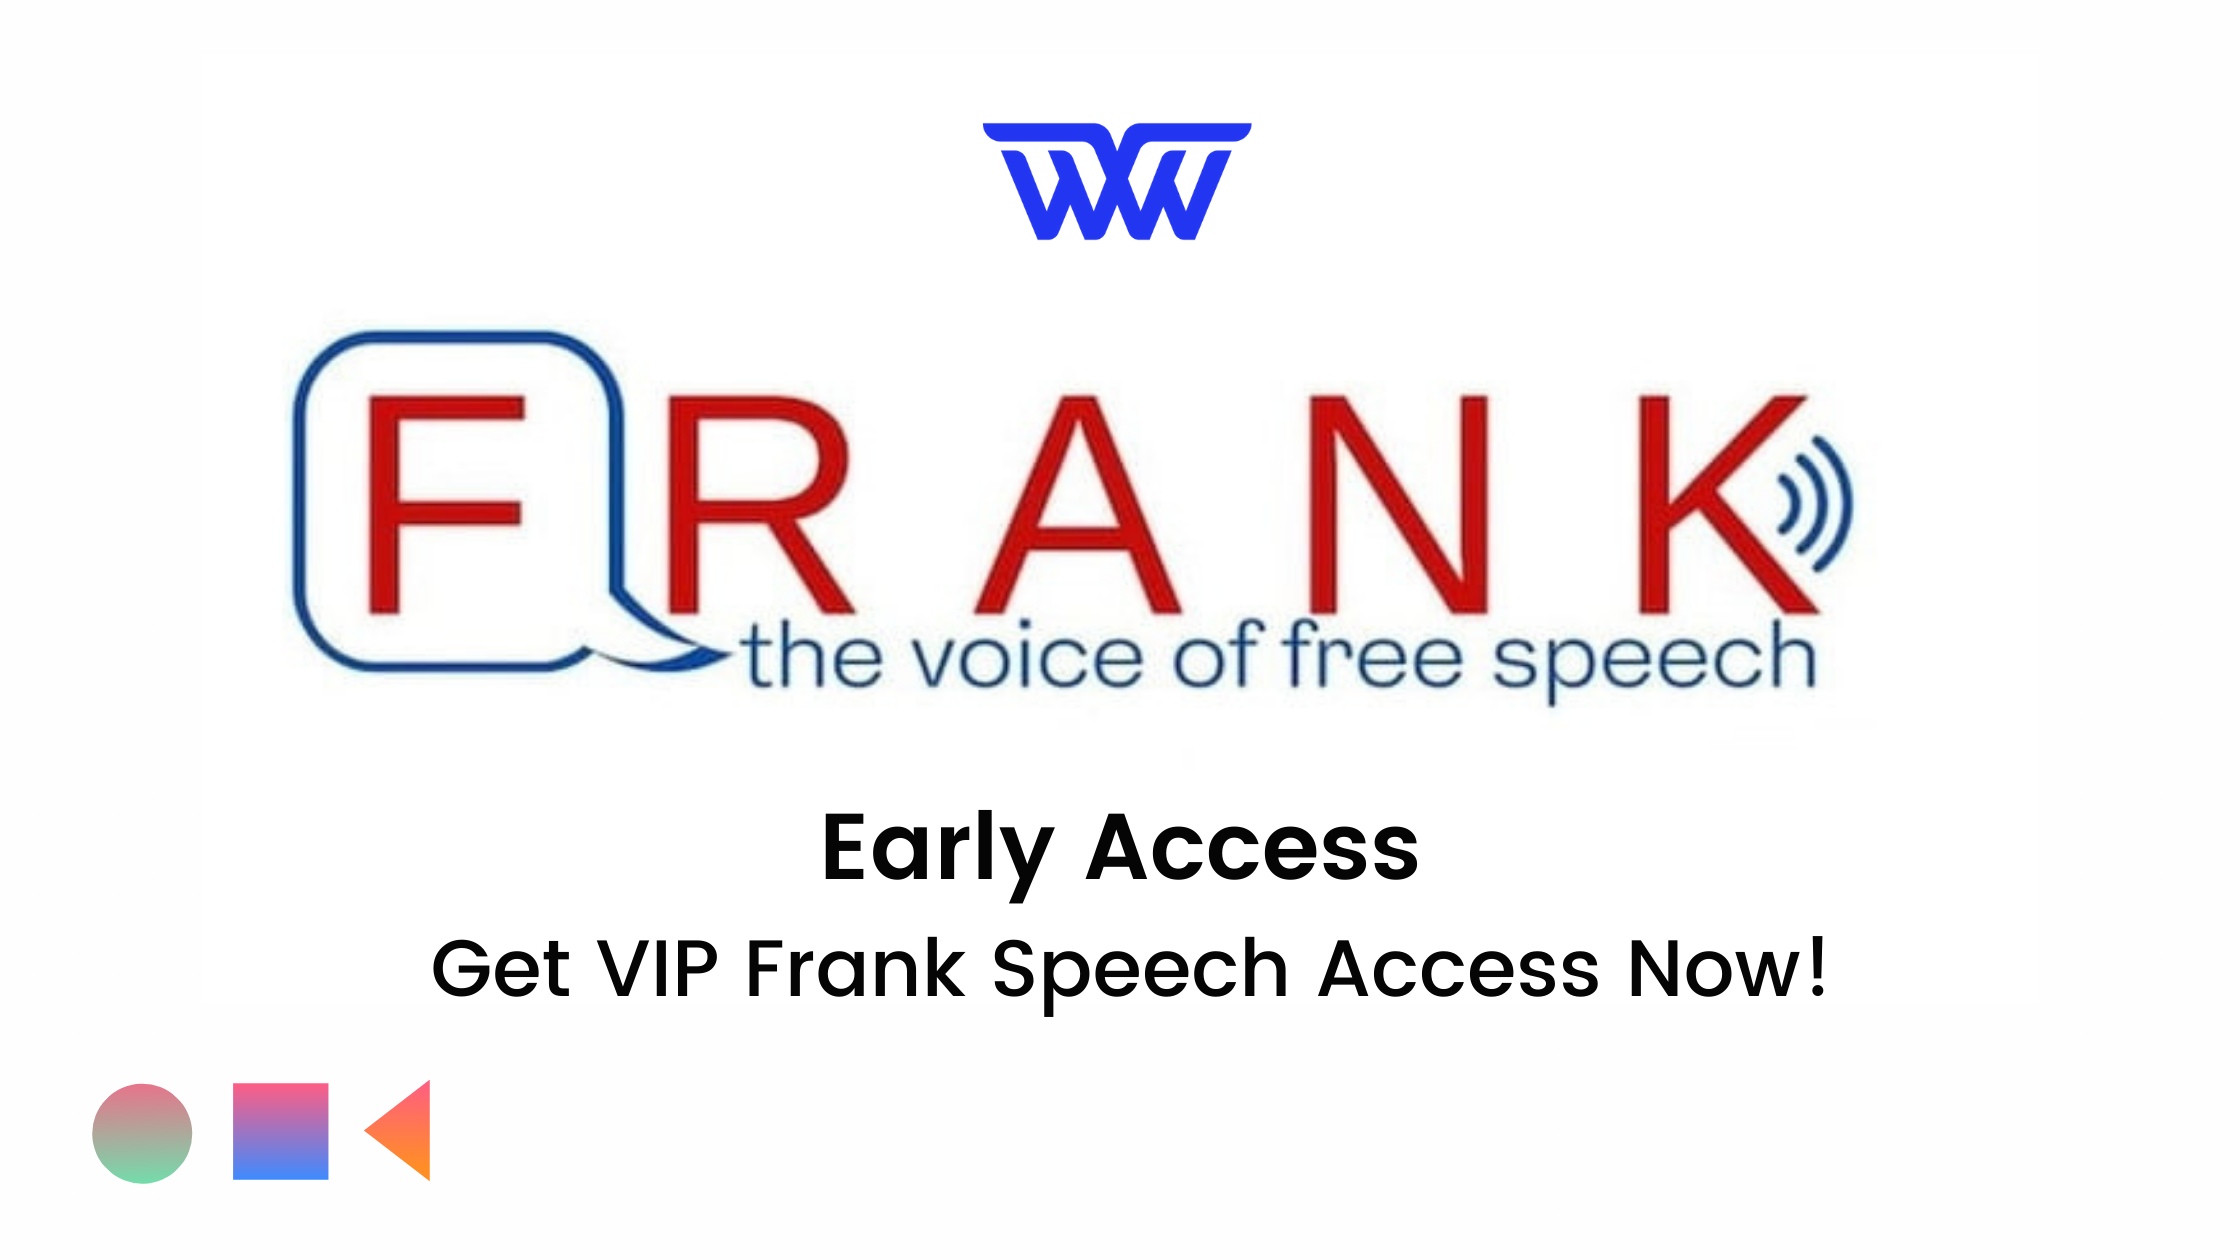 Frank Speech Early Access - Get VIP Frank Speech Access Now!